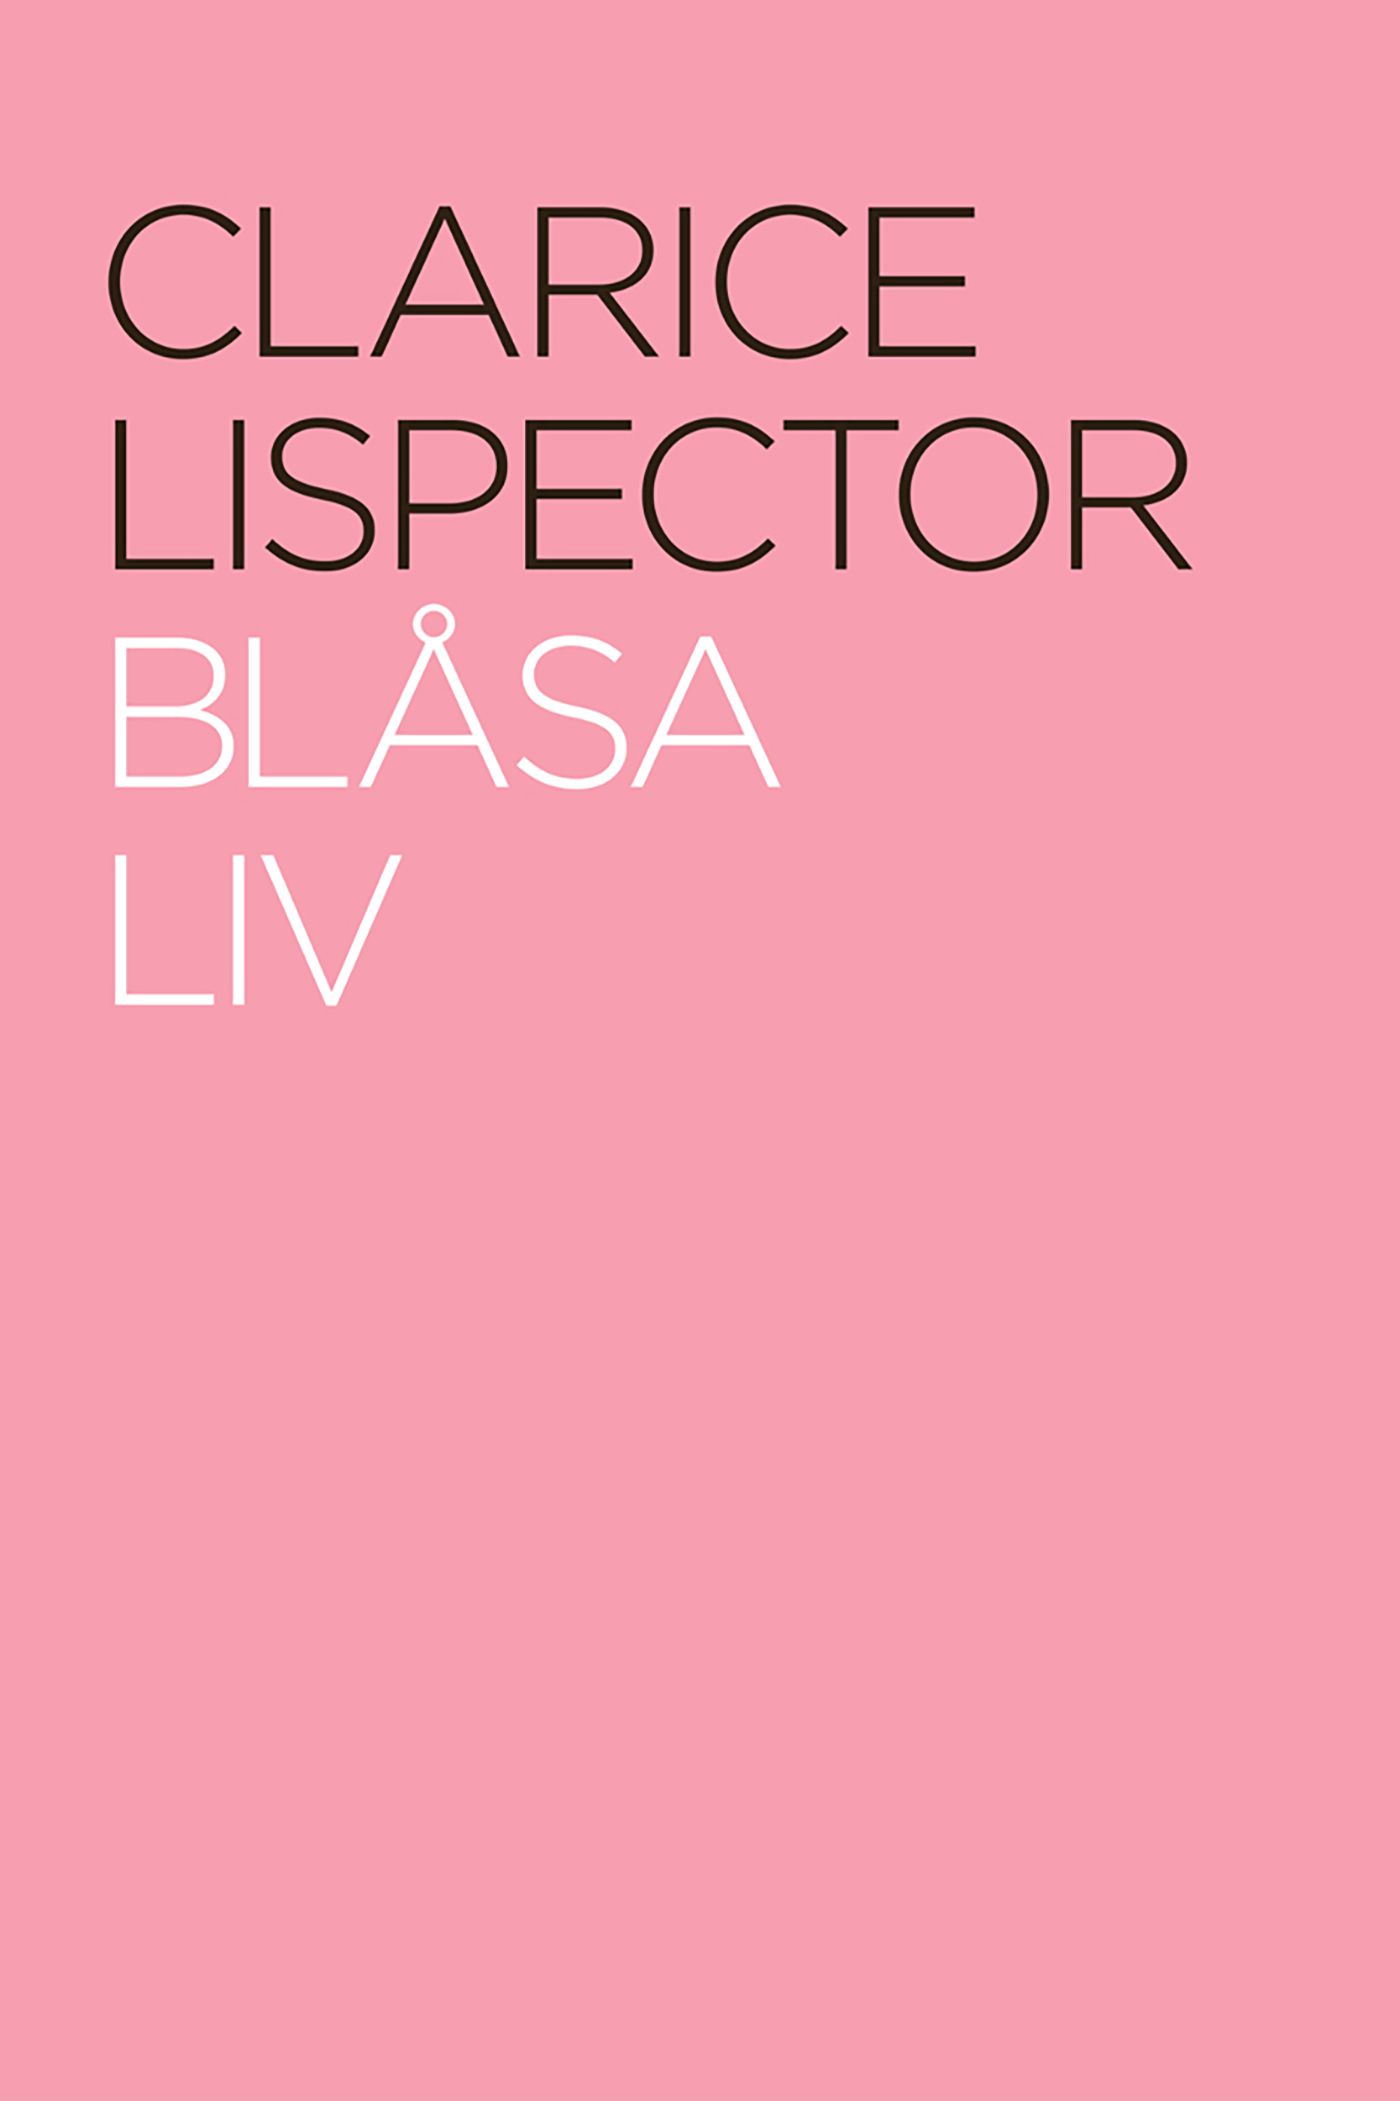 Blåsa liv, e-bok av Clarice Lispector